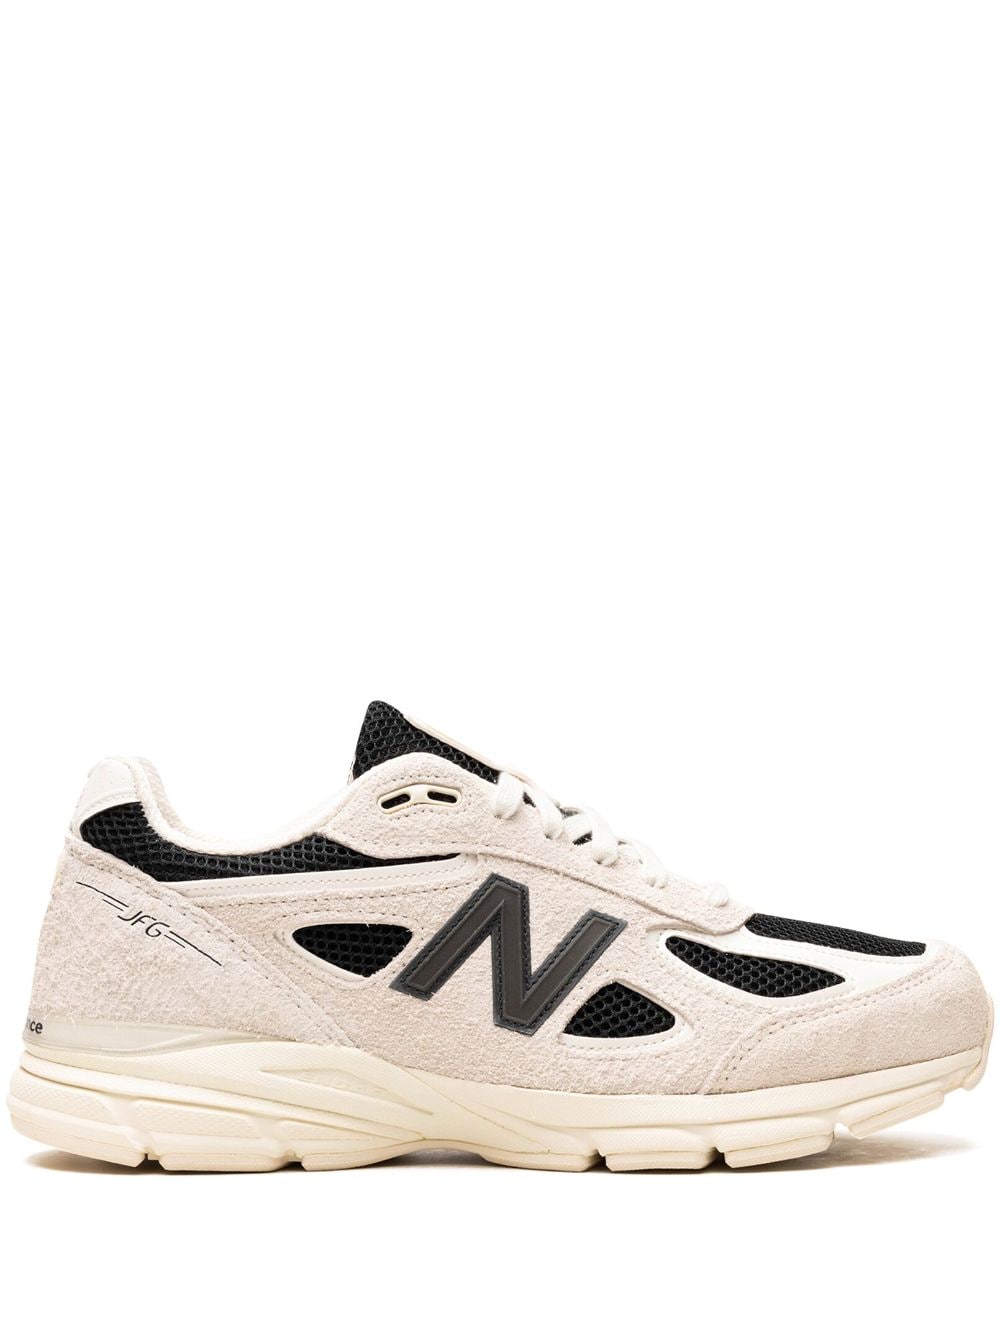 New Balance 990v4 "Joe Freshgoods - White" sneakers - Neutrals